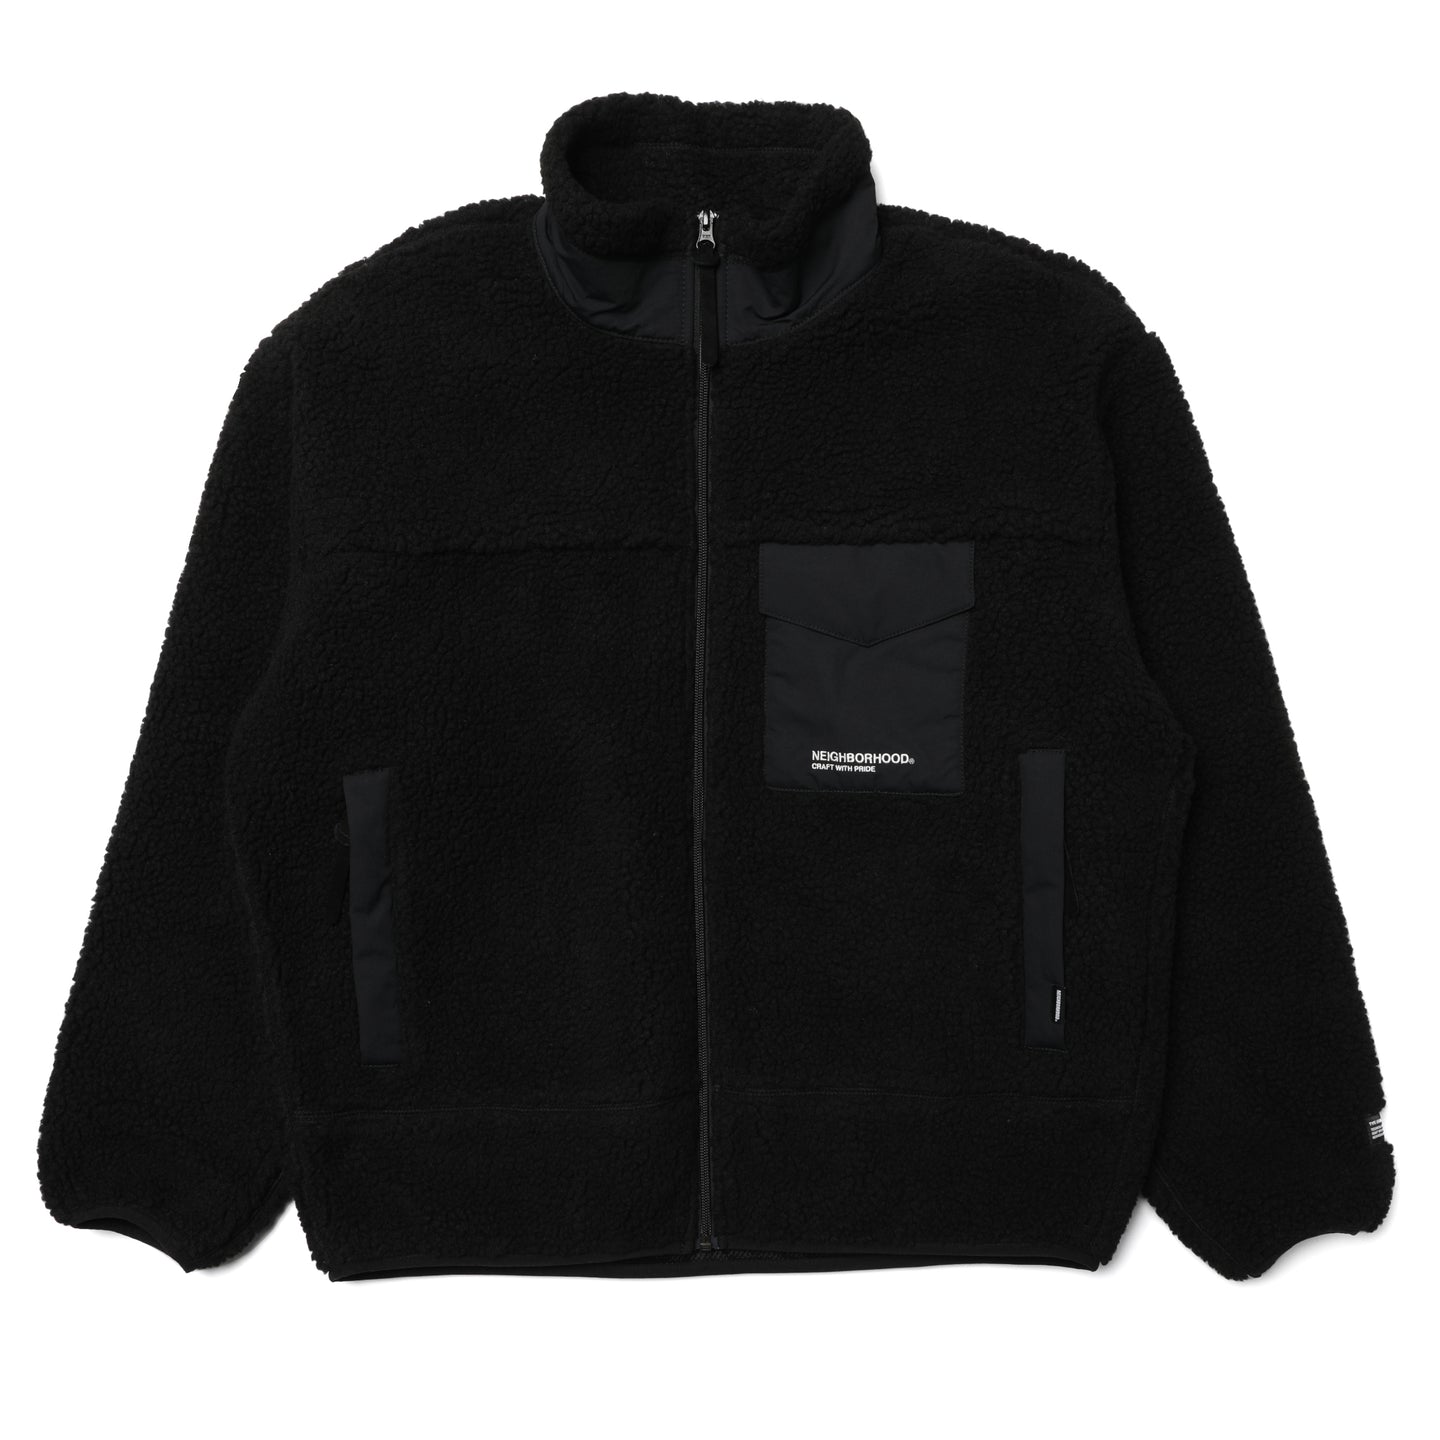 Neighborhood BOA Fleece Jacket Black